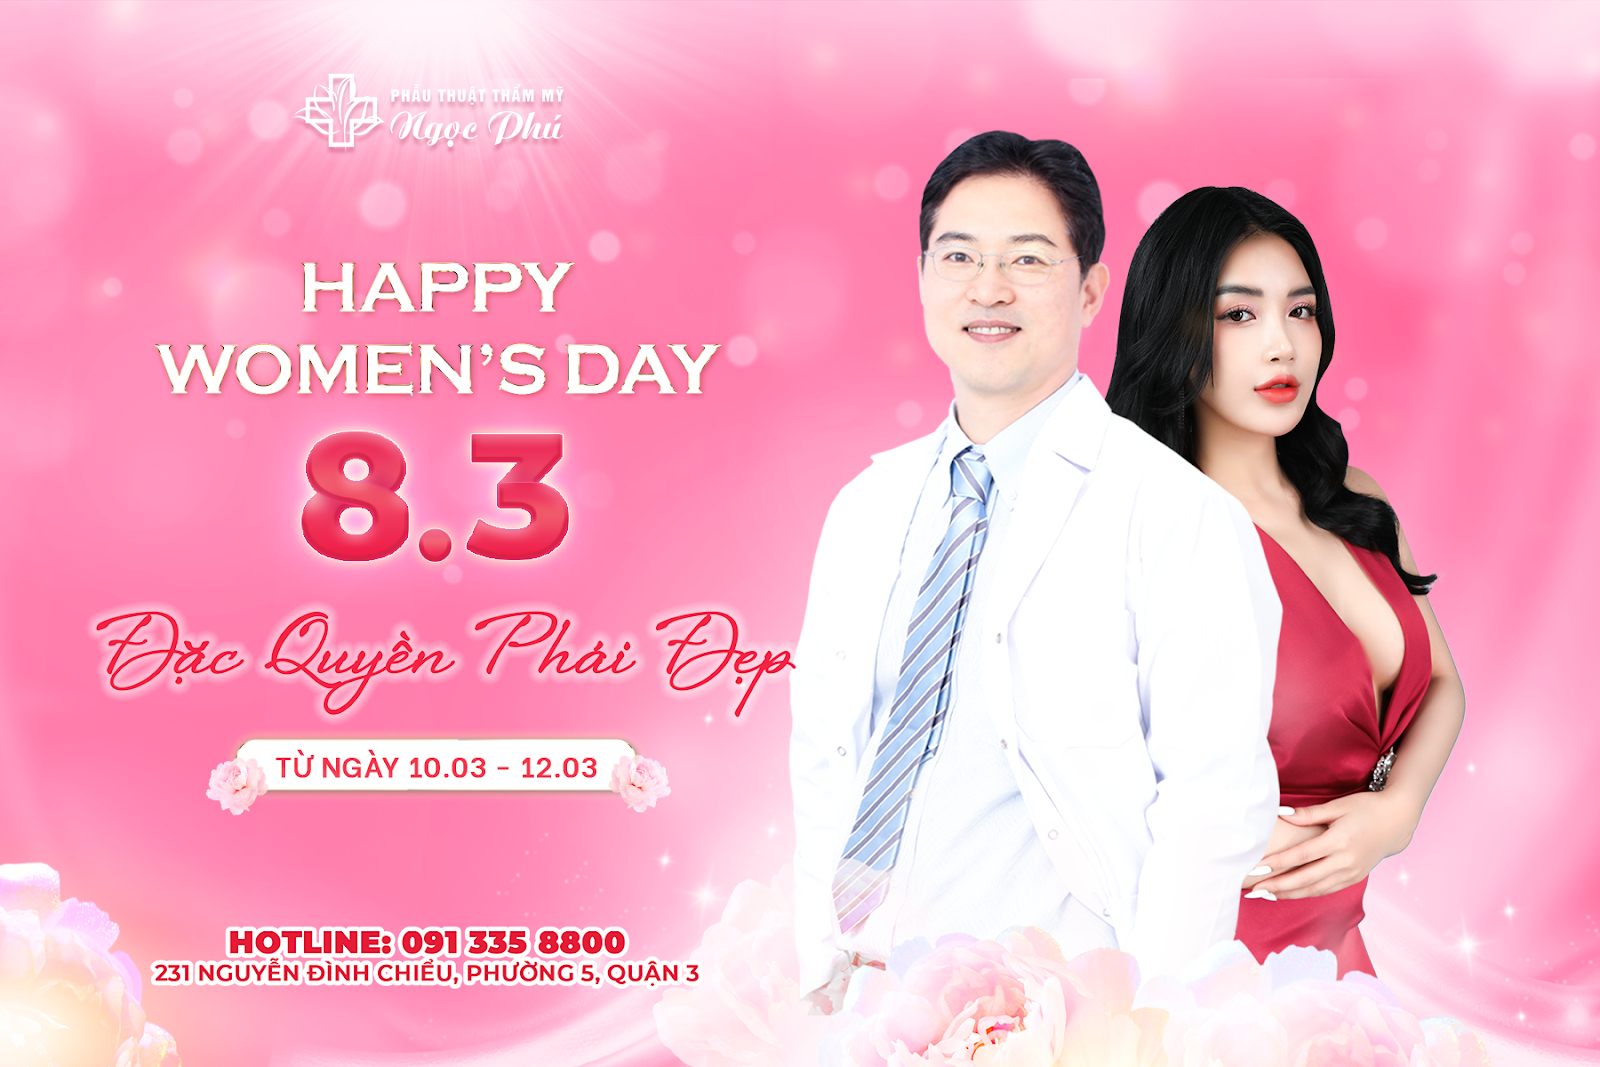 Chào mừng ngày Quốc tế Phụ nữ, Thẩm mỹ Ngọc Phí tri ân chương trình “Đặc quyền phái đẹp” với sự trở lại của bác sĩ Thẩm mỹ Hàn Quốc Lee Jung Hoon